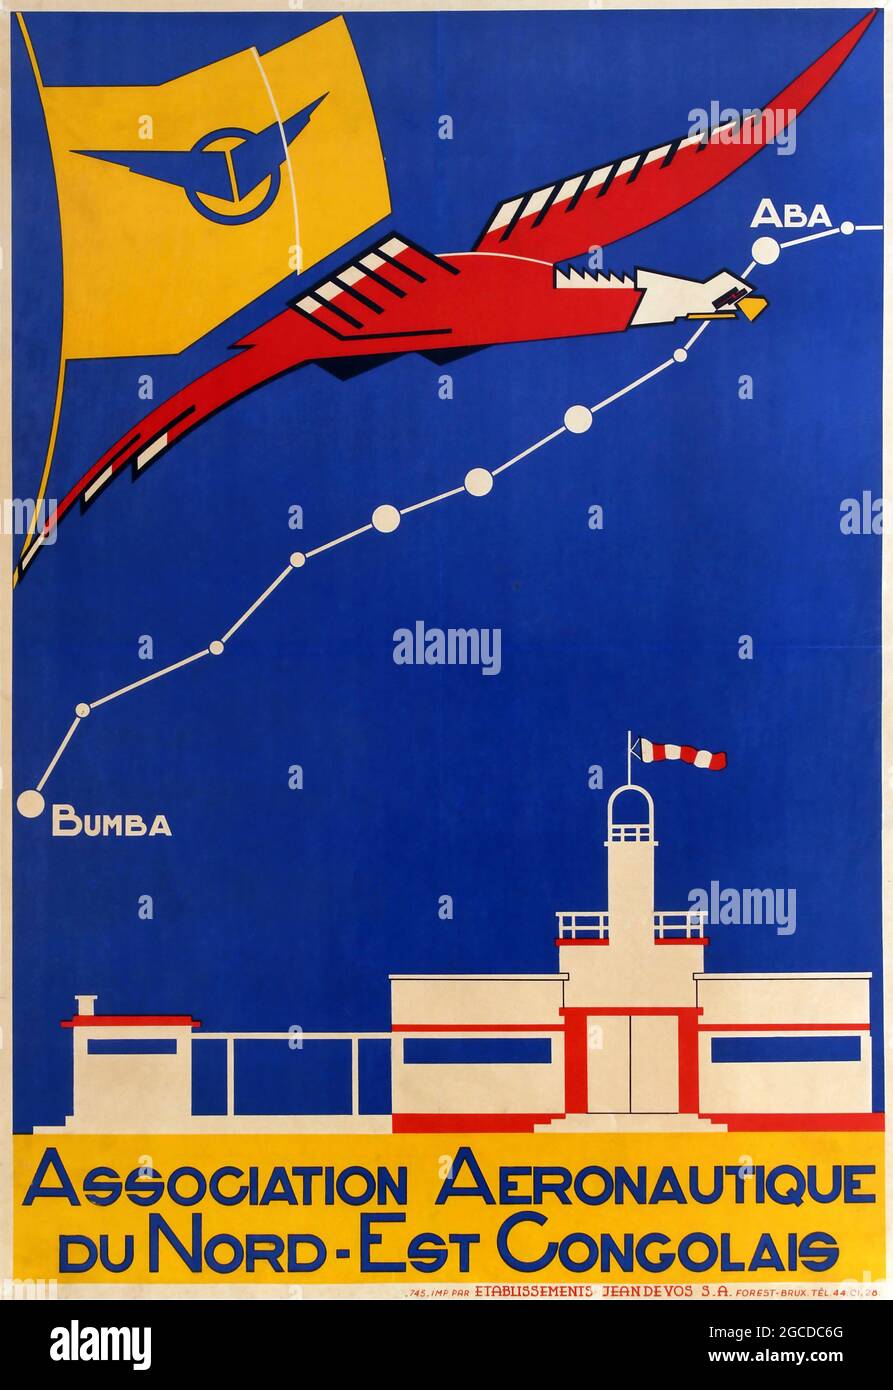 Vintage Aviation / Air / Flight poster – Africa Congo Aeronautic Poster Association Aeronautique Du Nord-Est Congolais. anni '30 Foto Stock